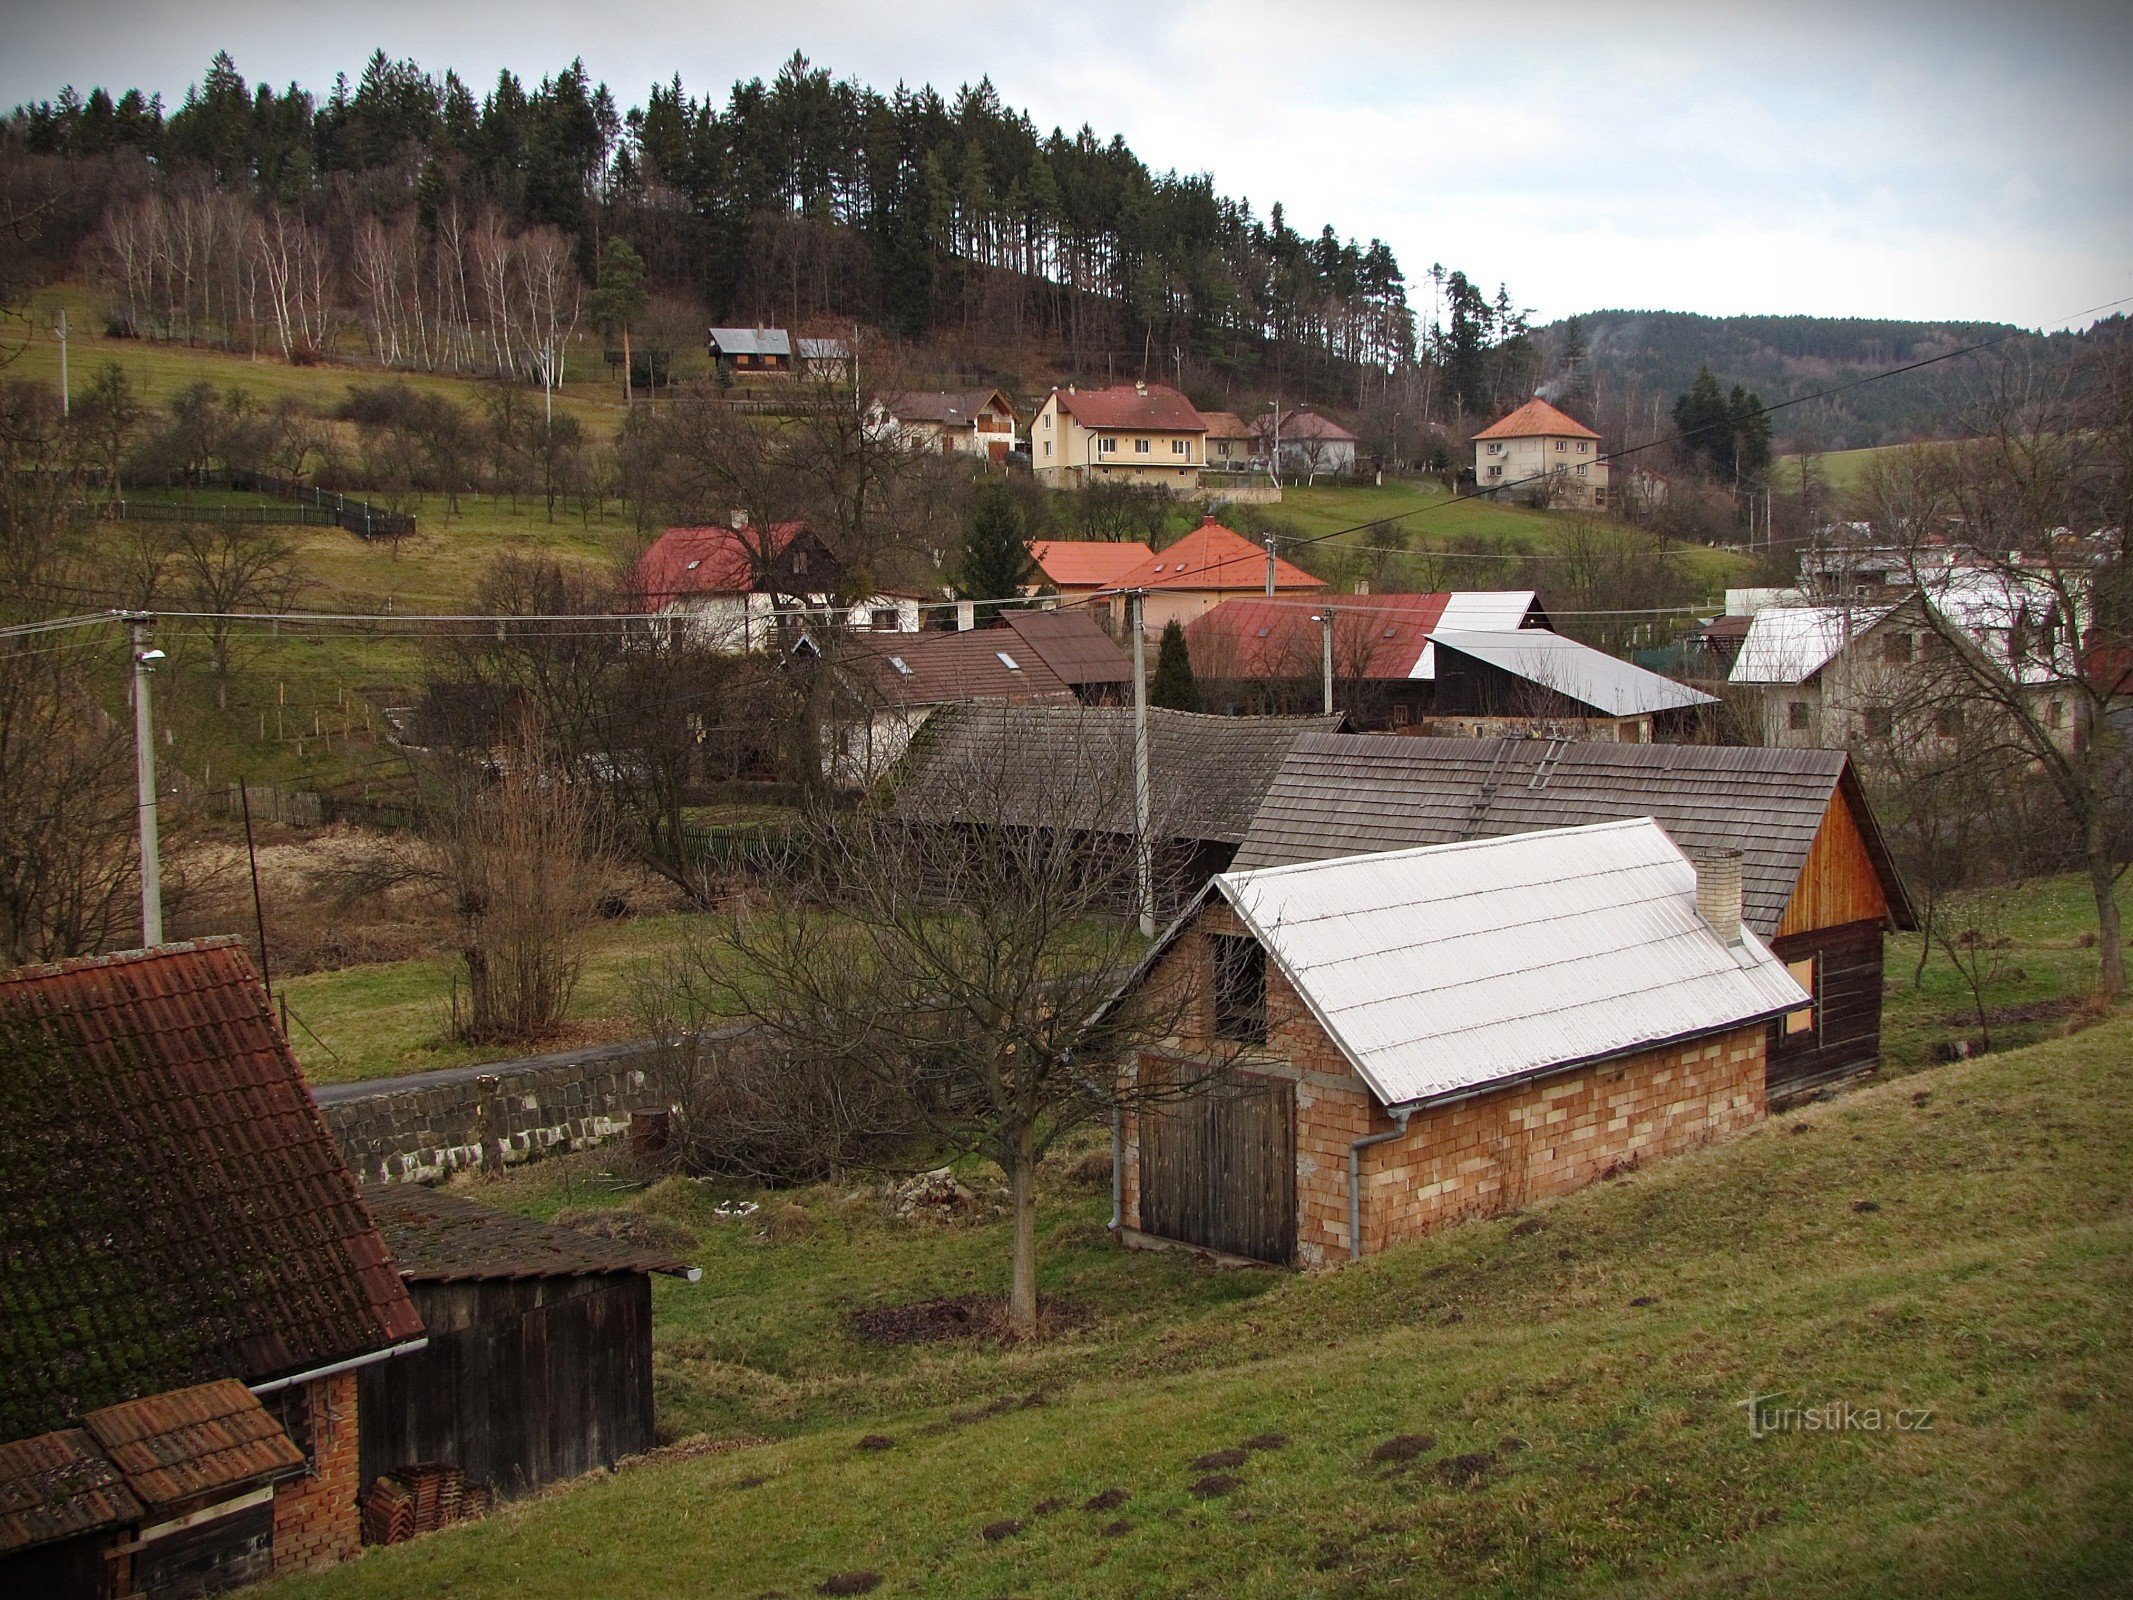 Đi bộ qua làng Vlčková